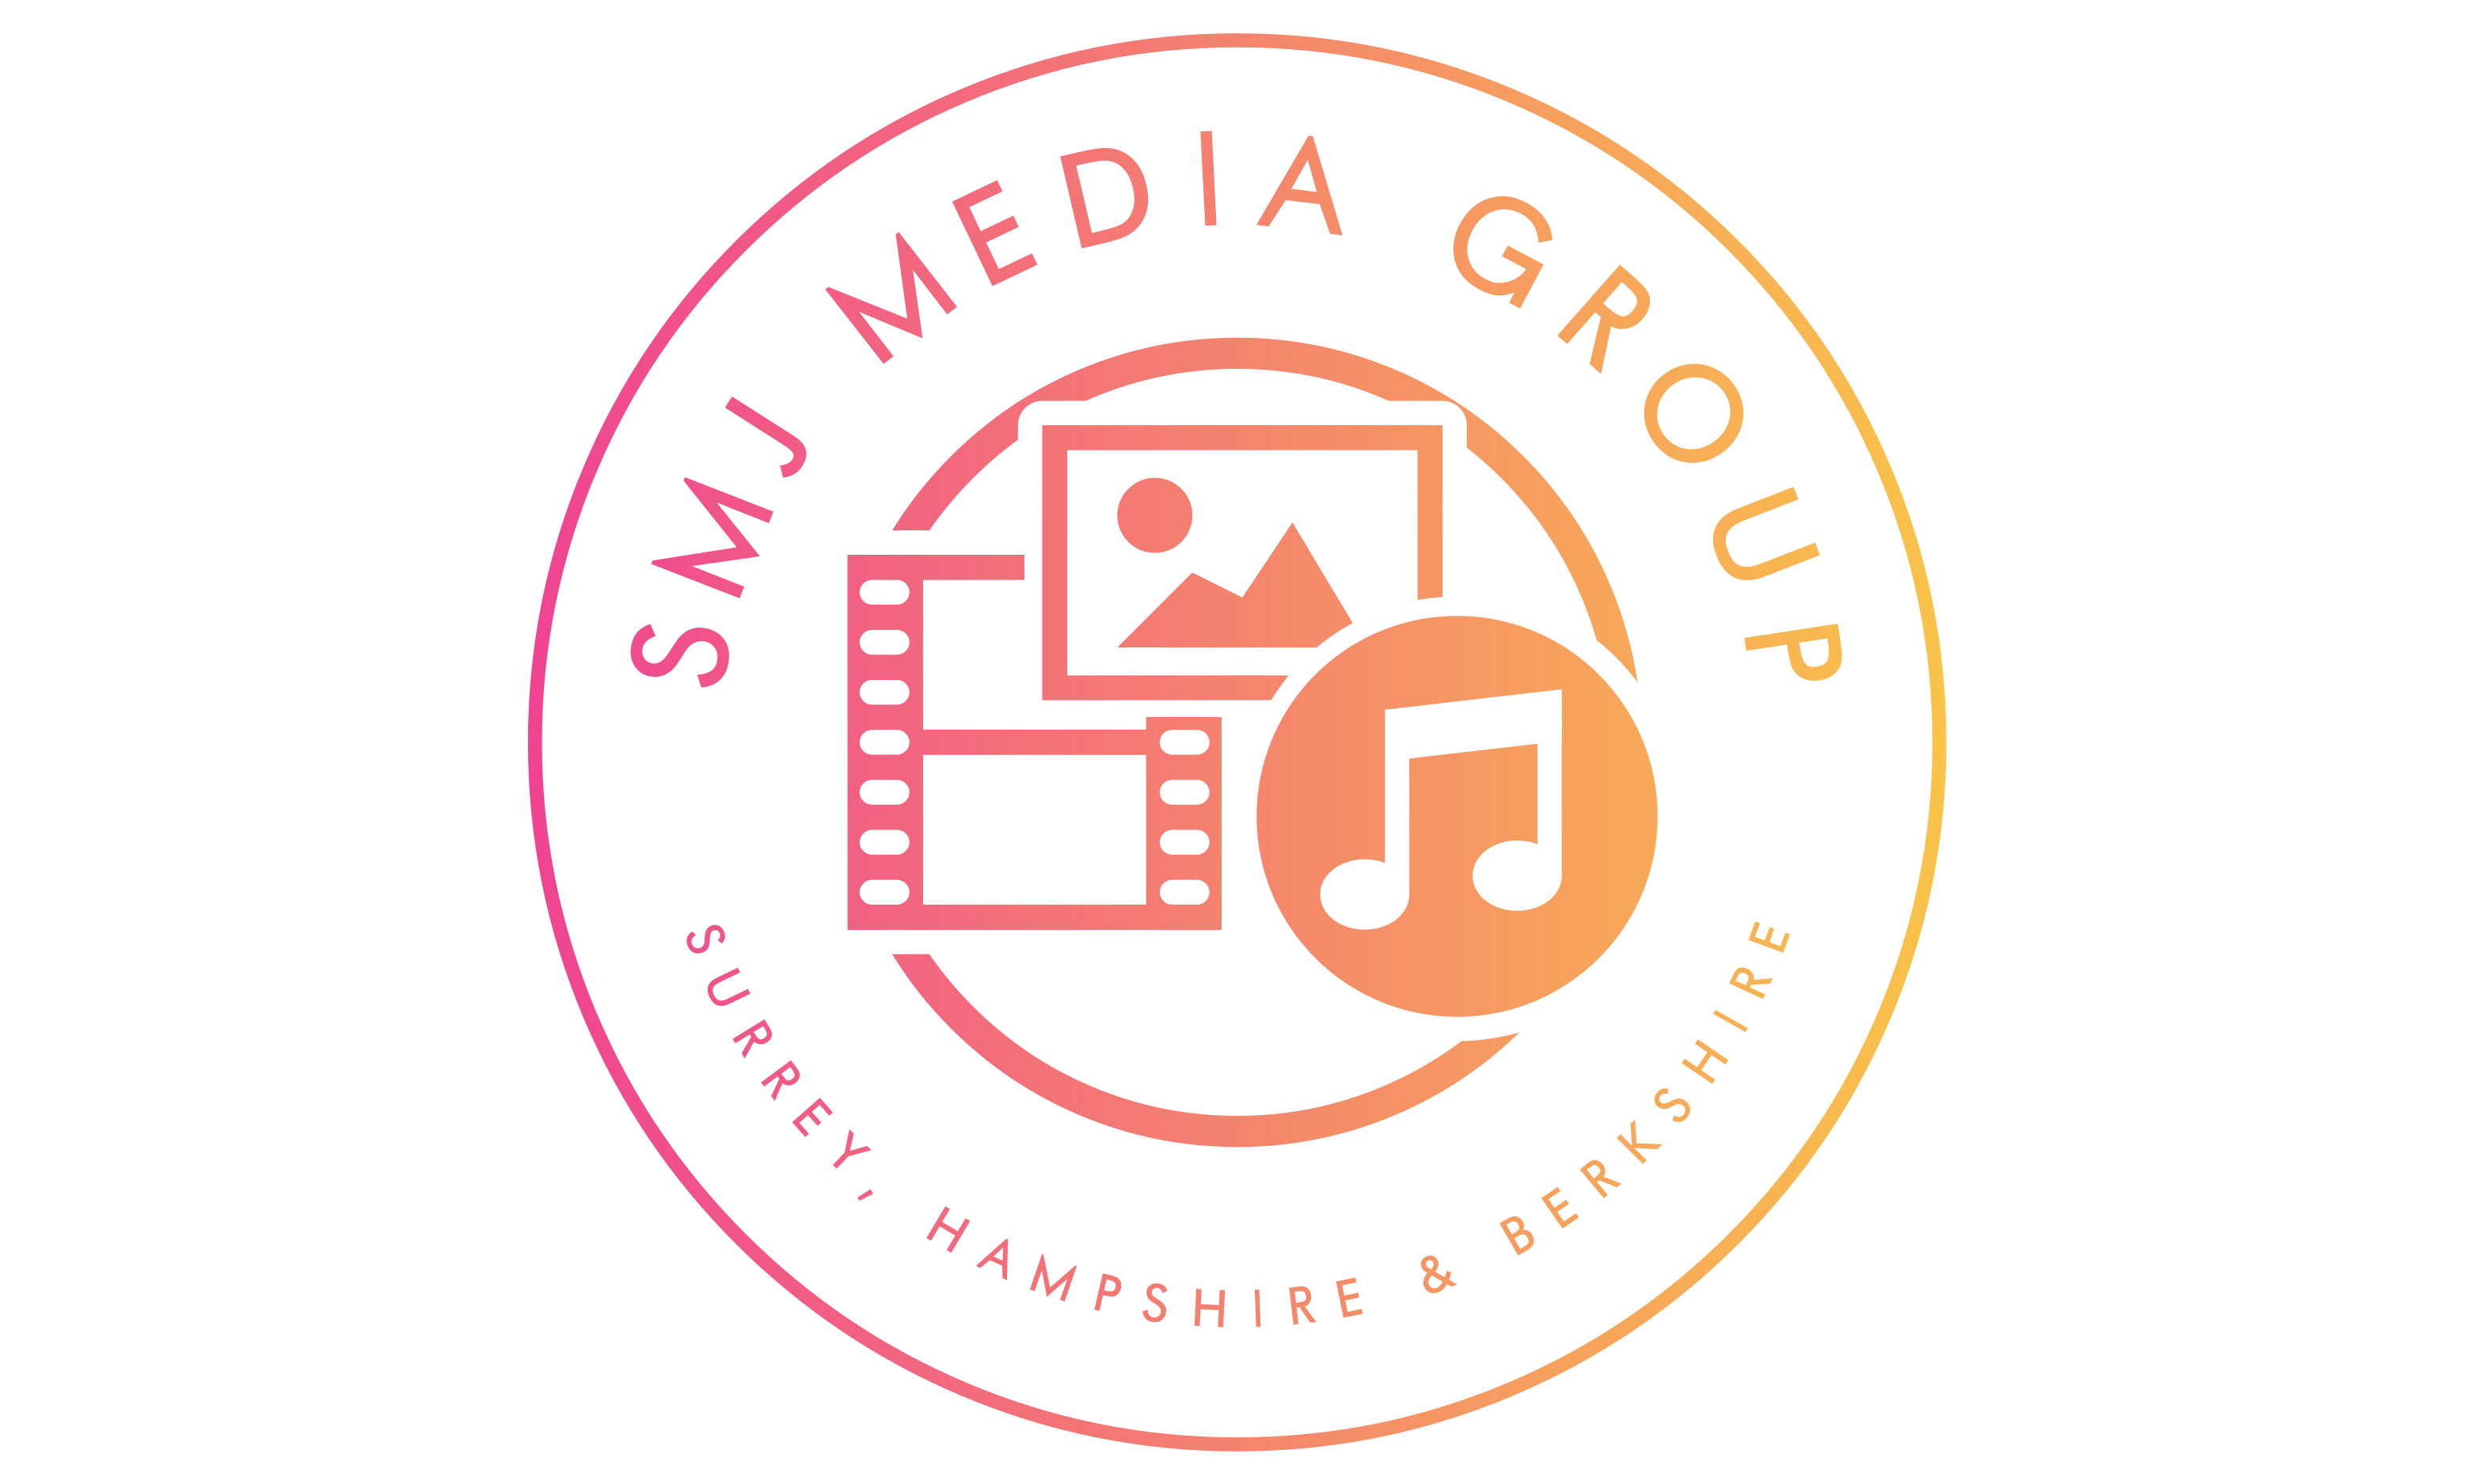 SMJ Media Group CIC - Community Interest Company